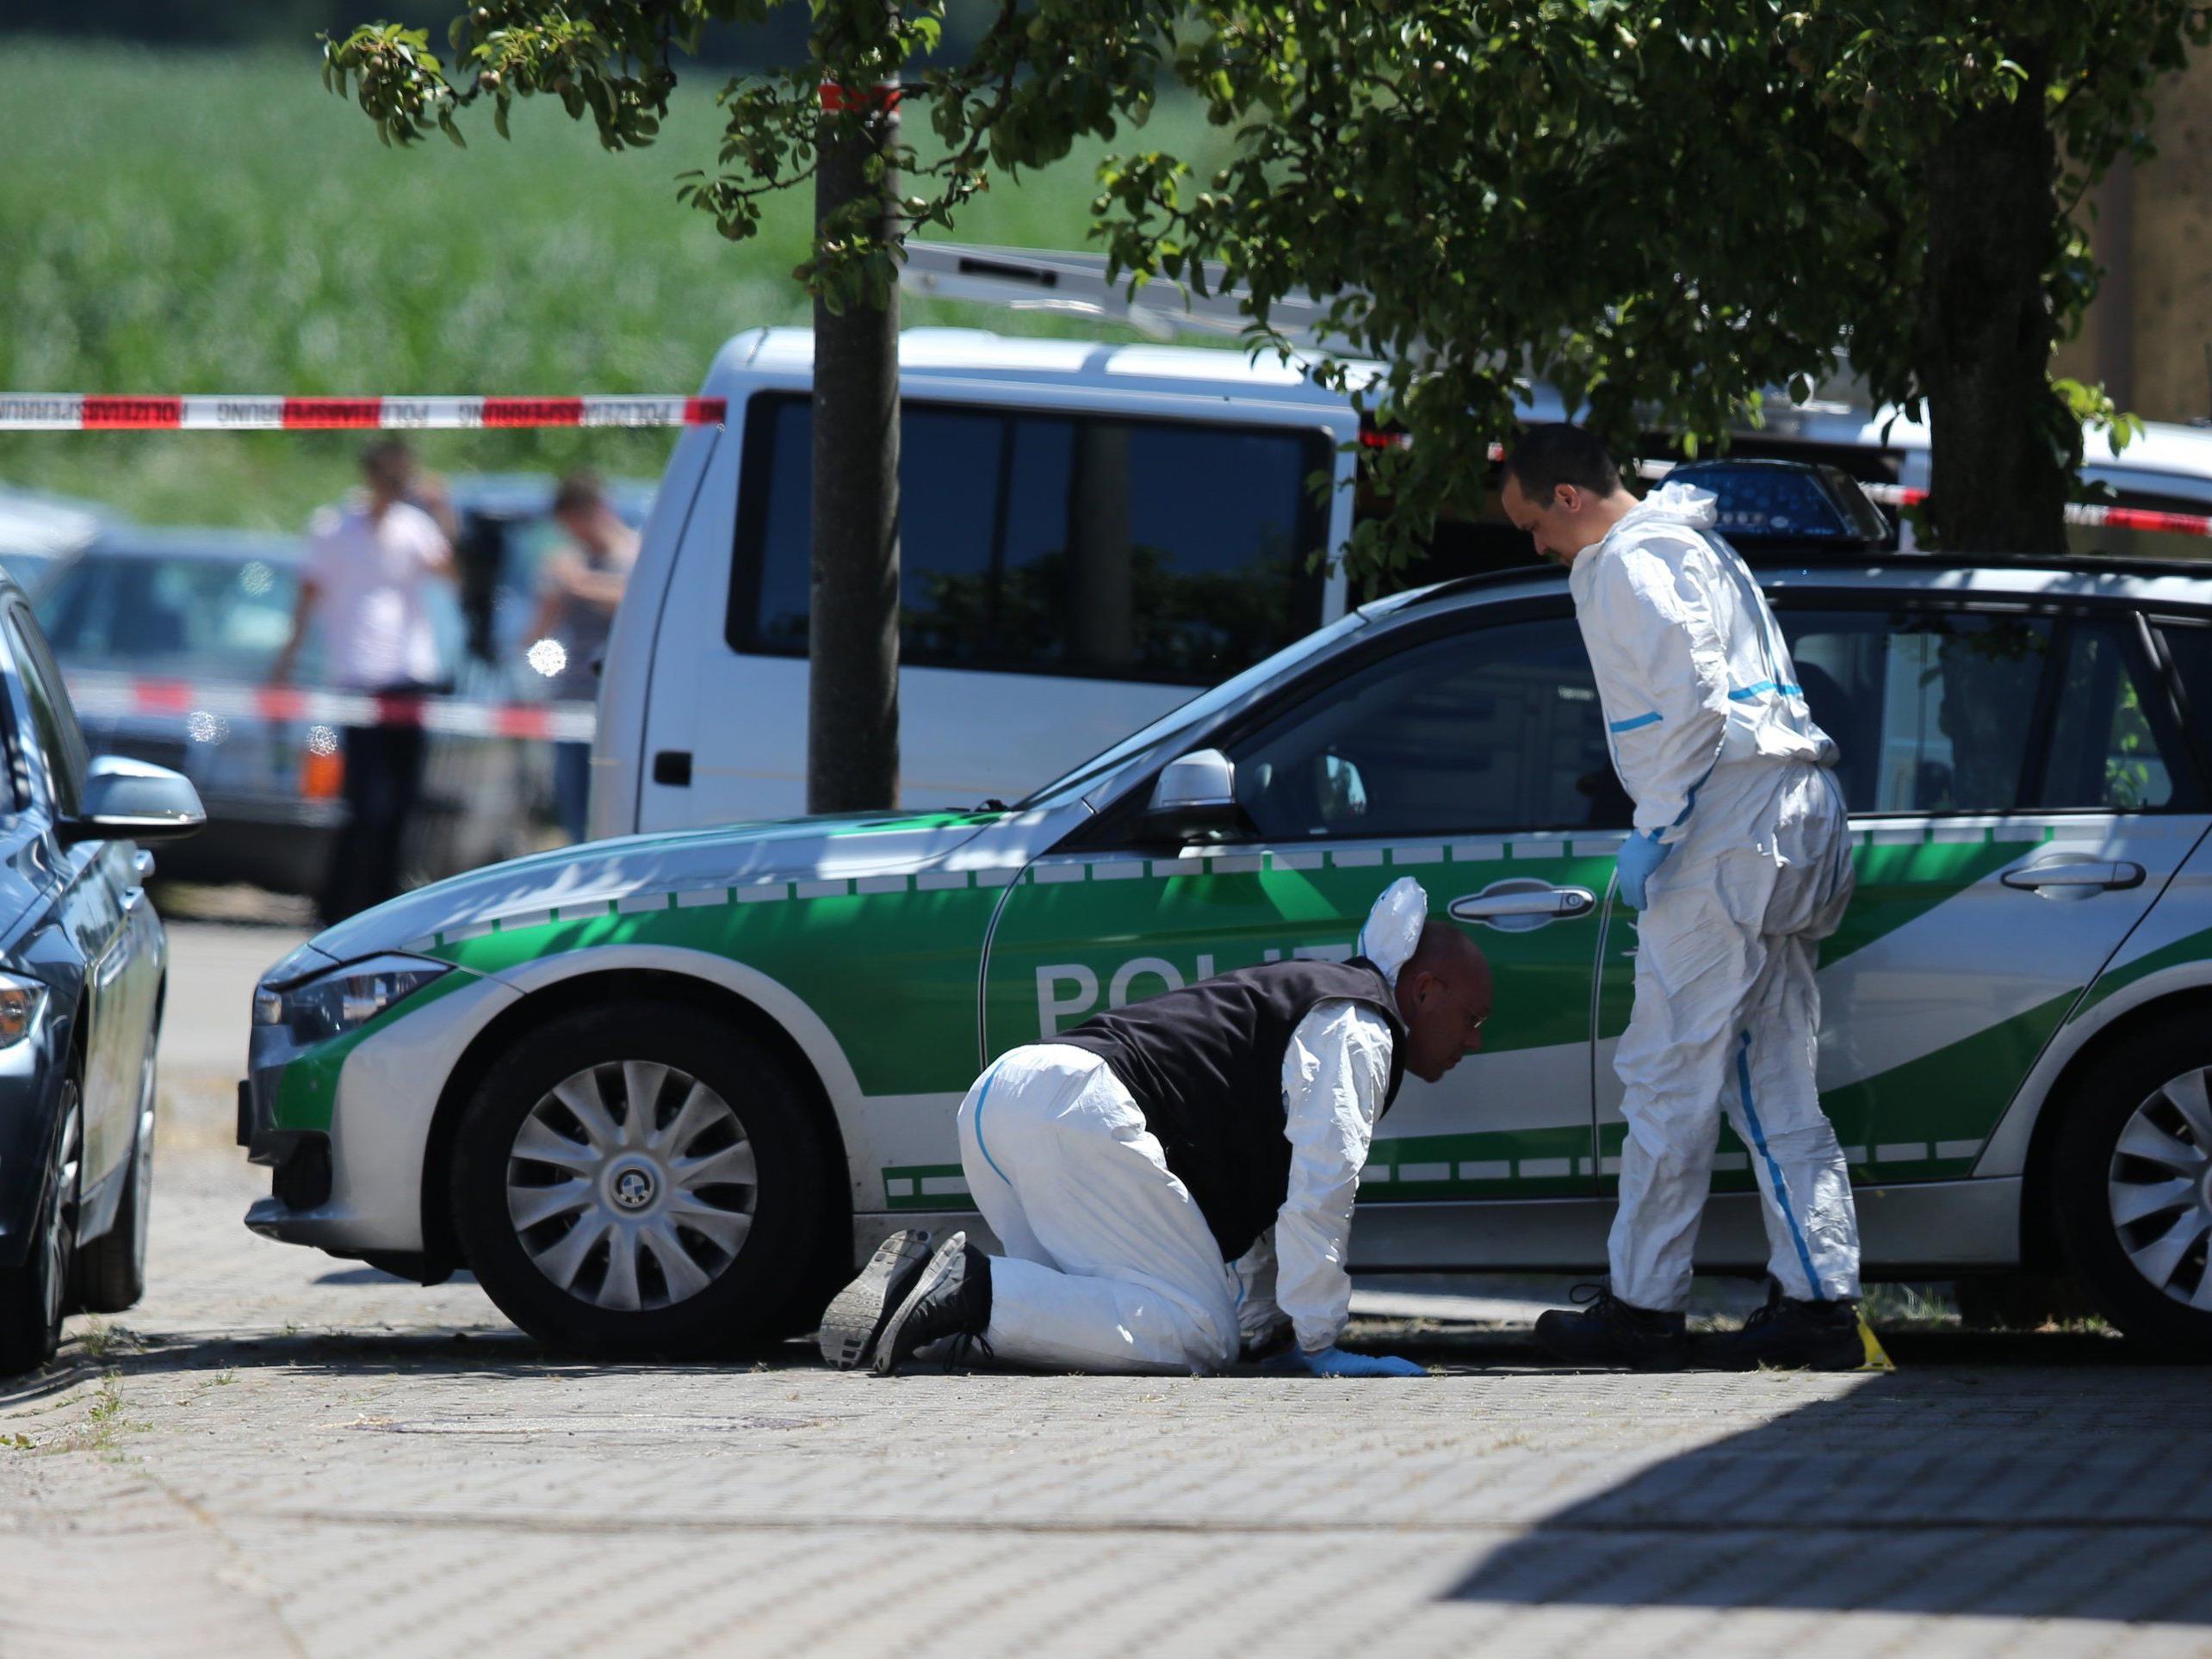 Amoklauf in Bayern: Autofahrer erschoss zwei Menschen - Festnahme.